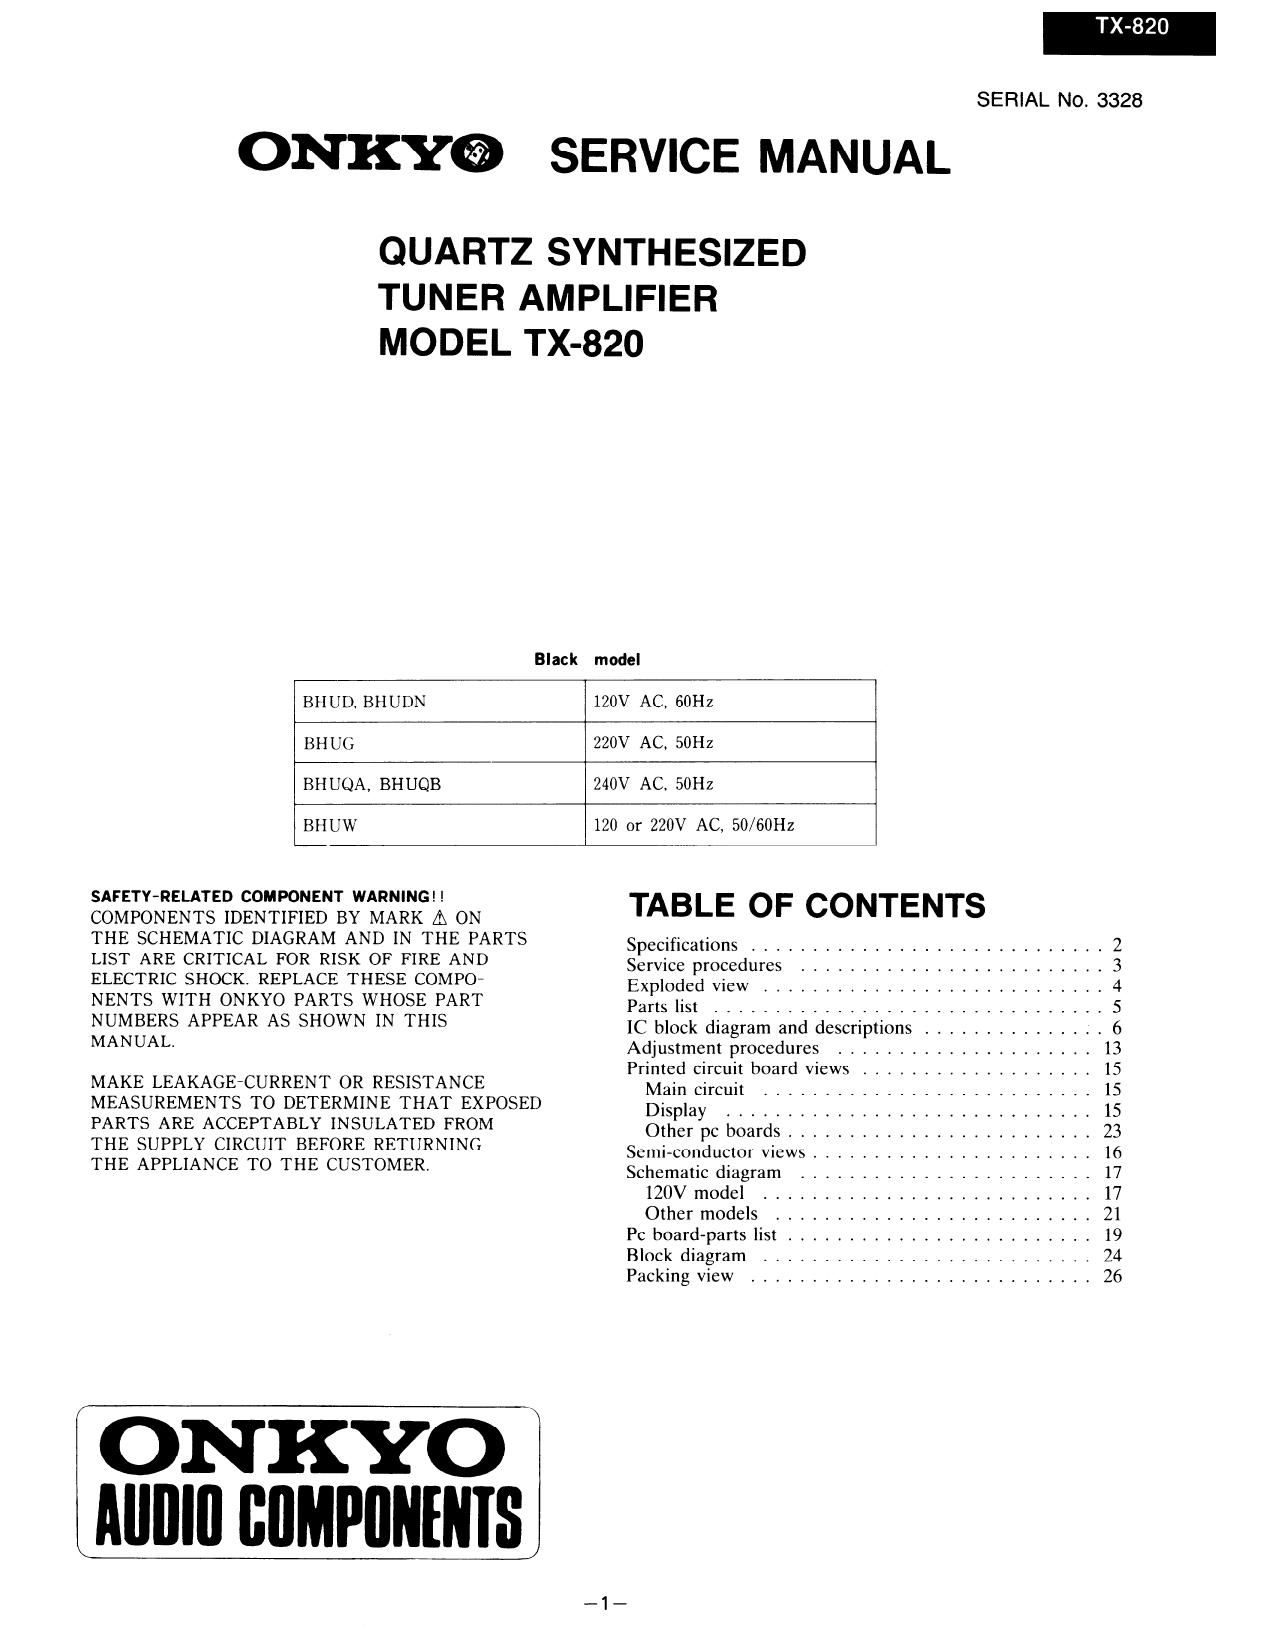 Onkyo TX 820 Service Manual